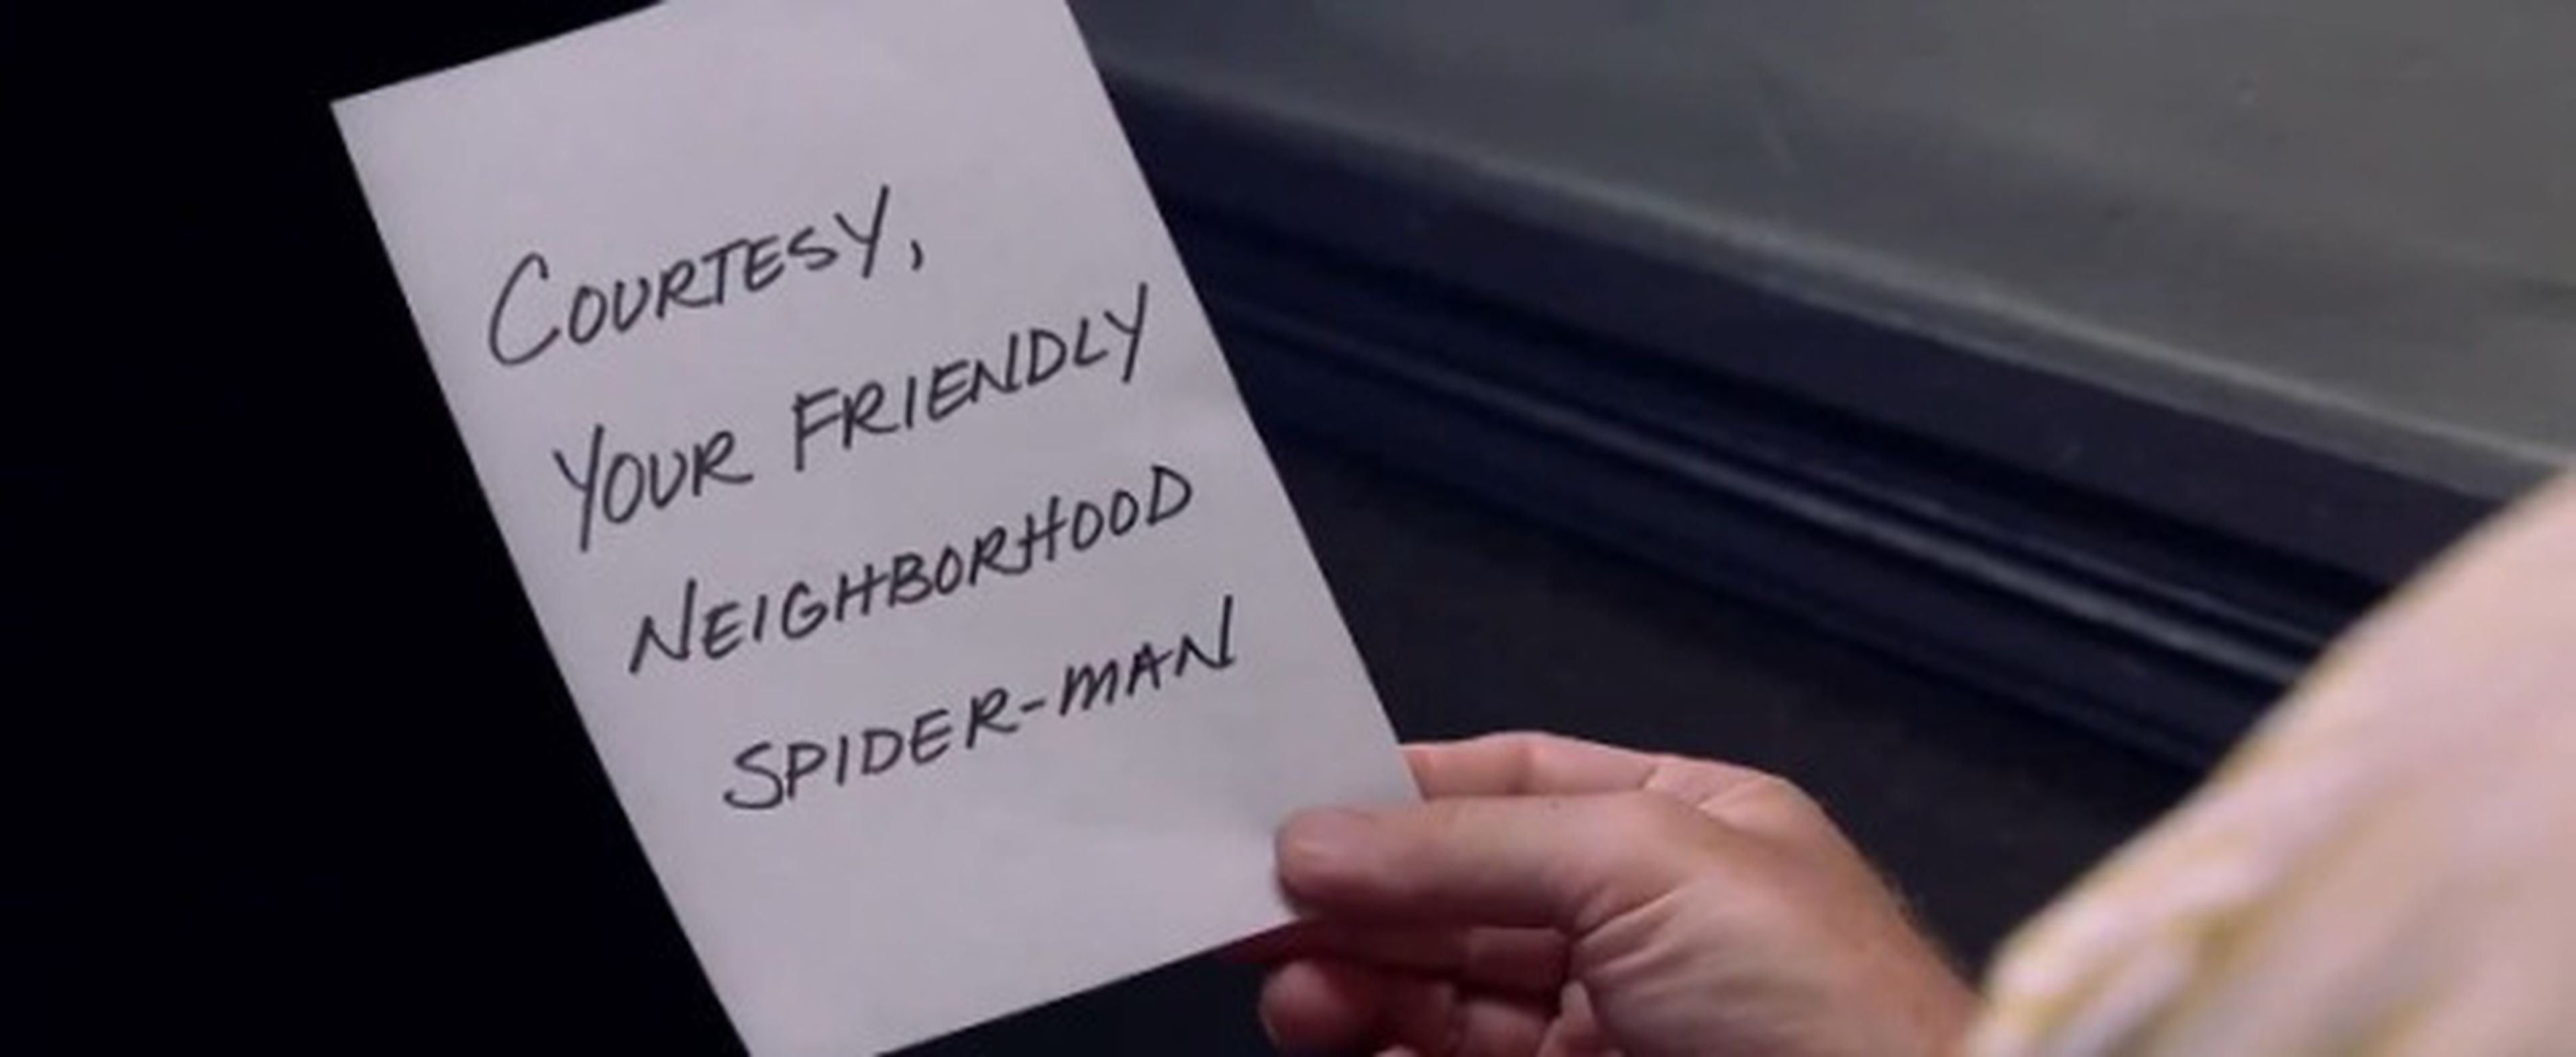 La nota de vuestro "Vecino y amigo Spider-man"